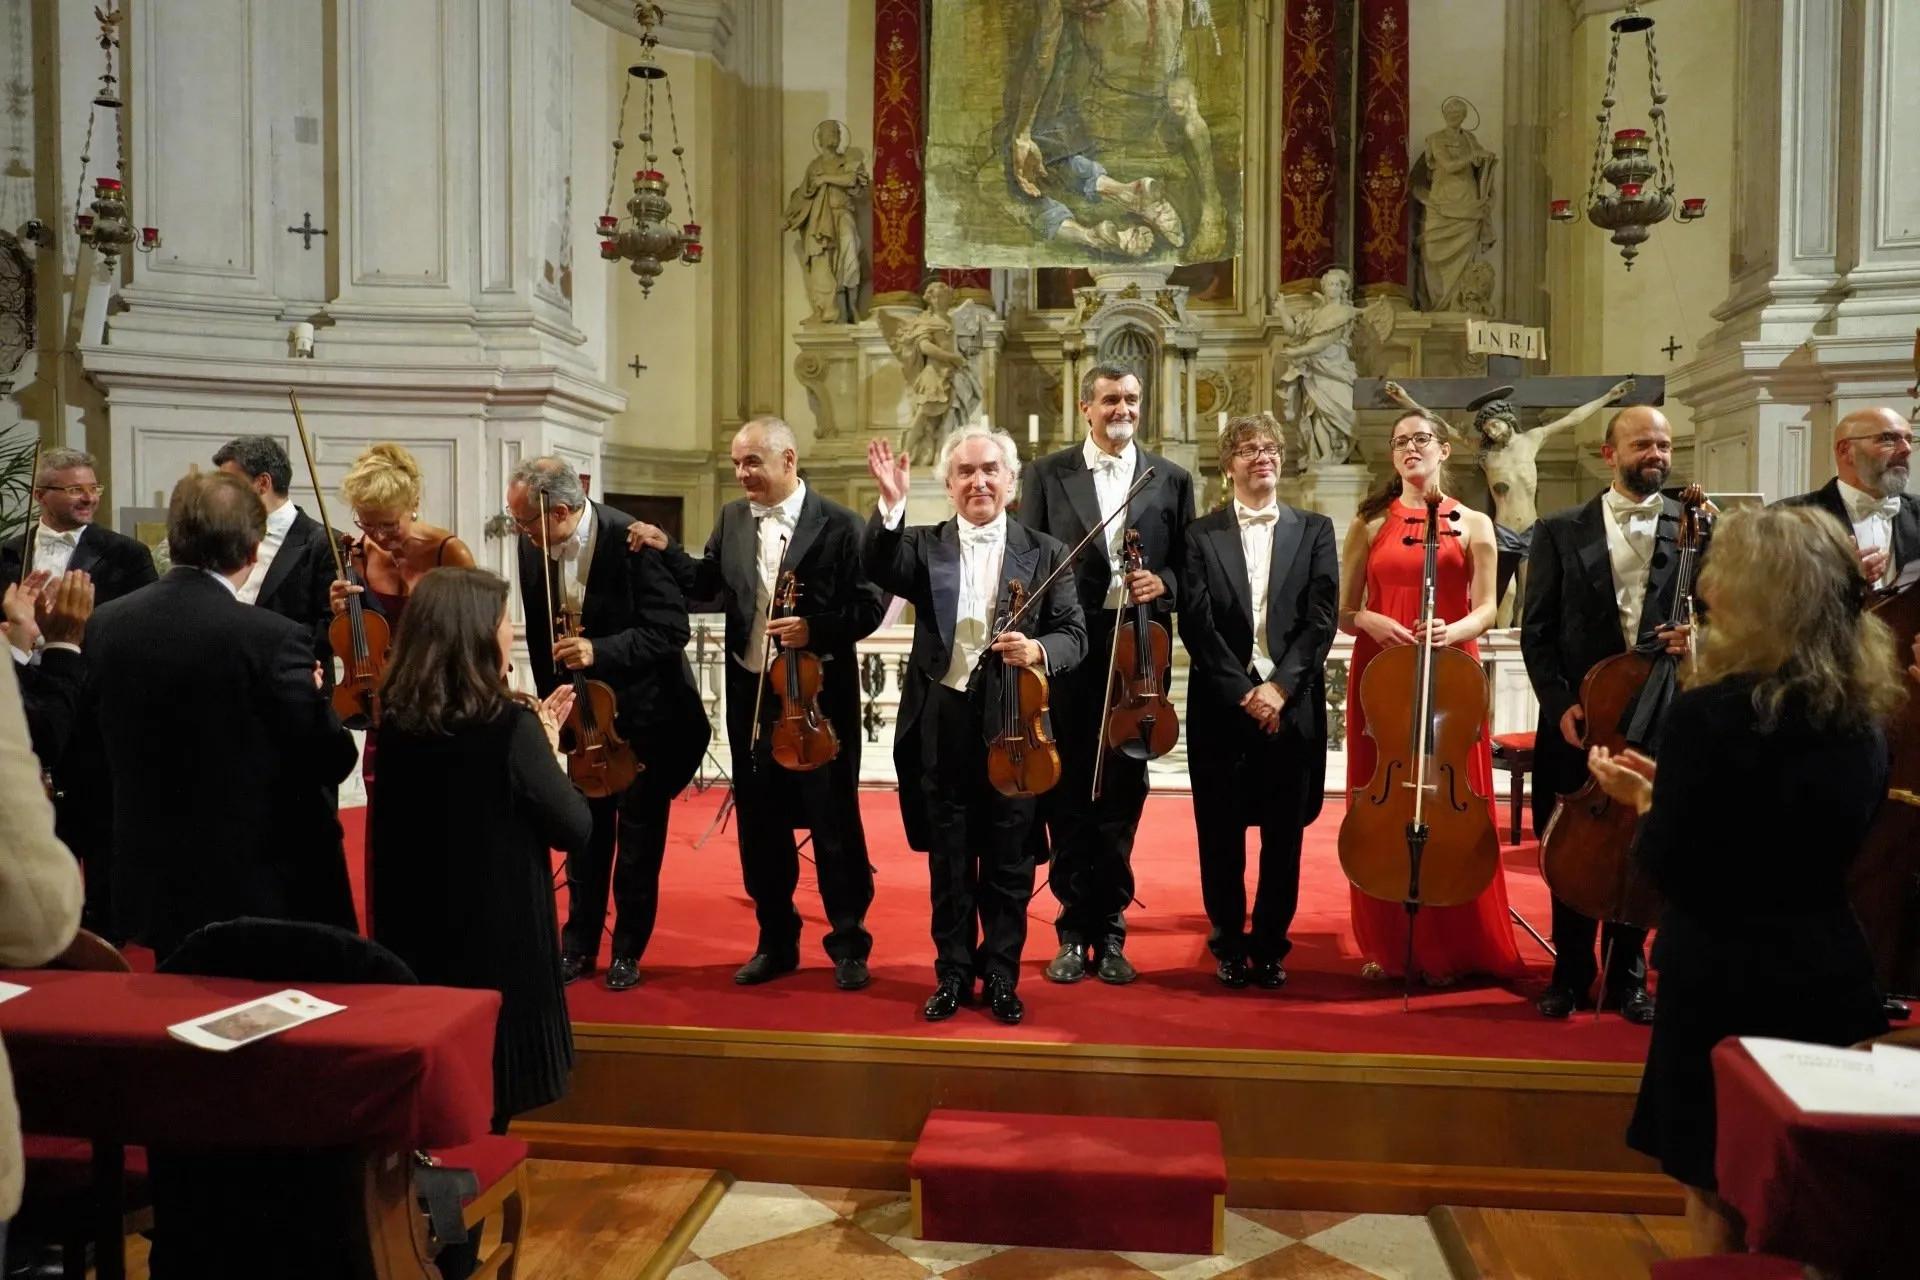 Concerto de As Quatro Estações na igreja de Vivaldi